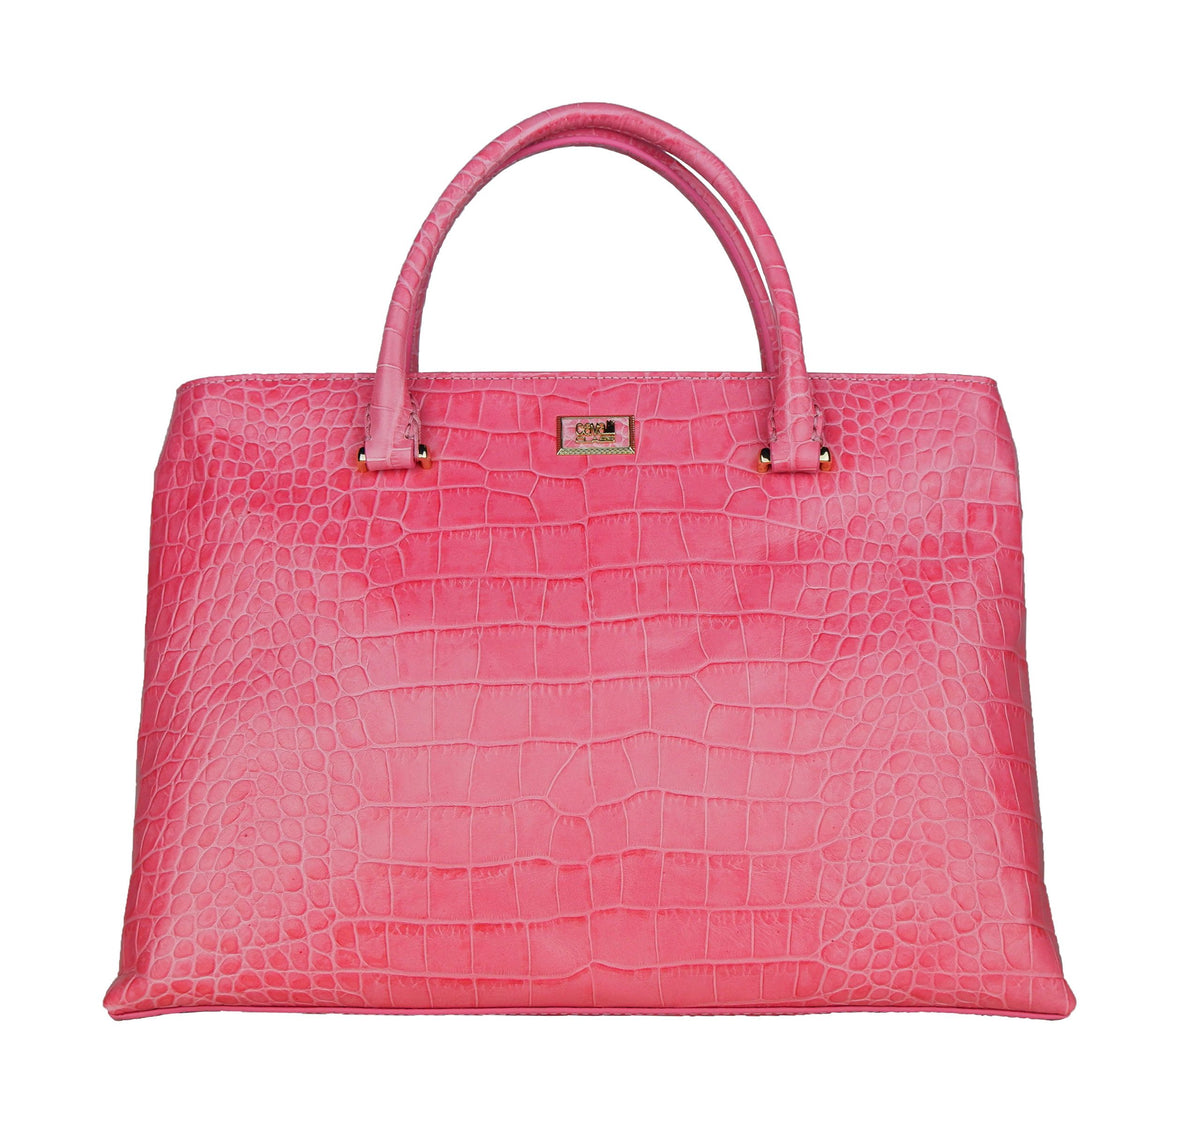 Cavalli Class Pink Calfskin Handbag